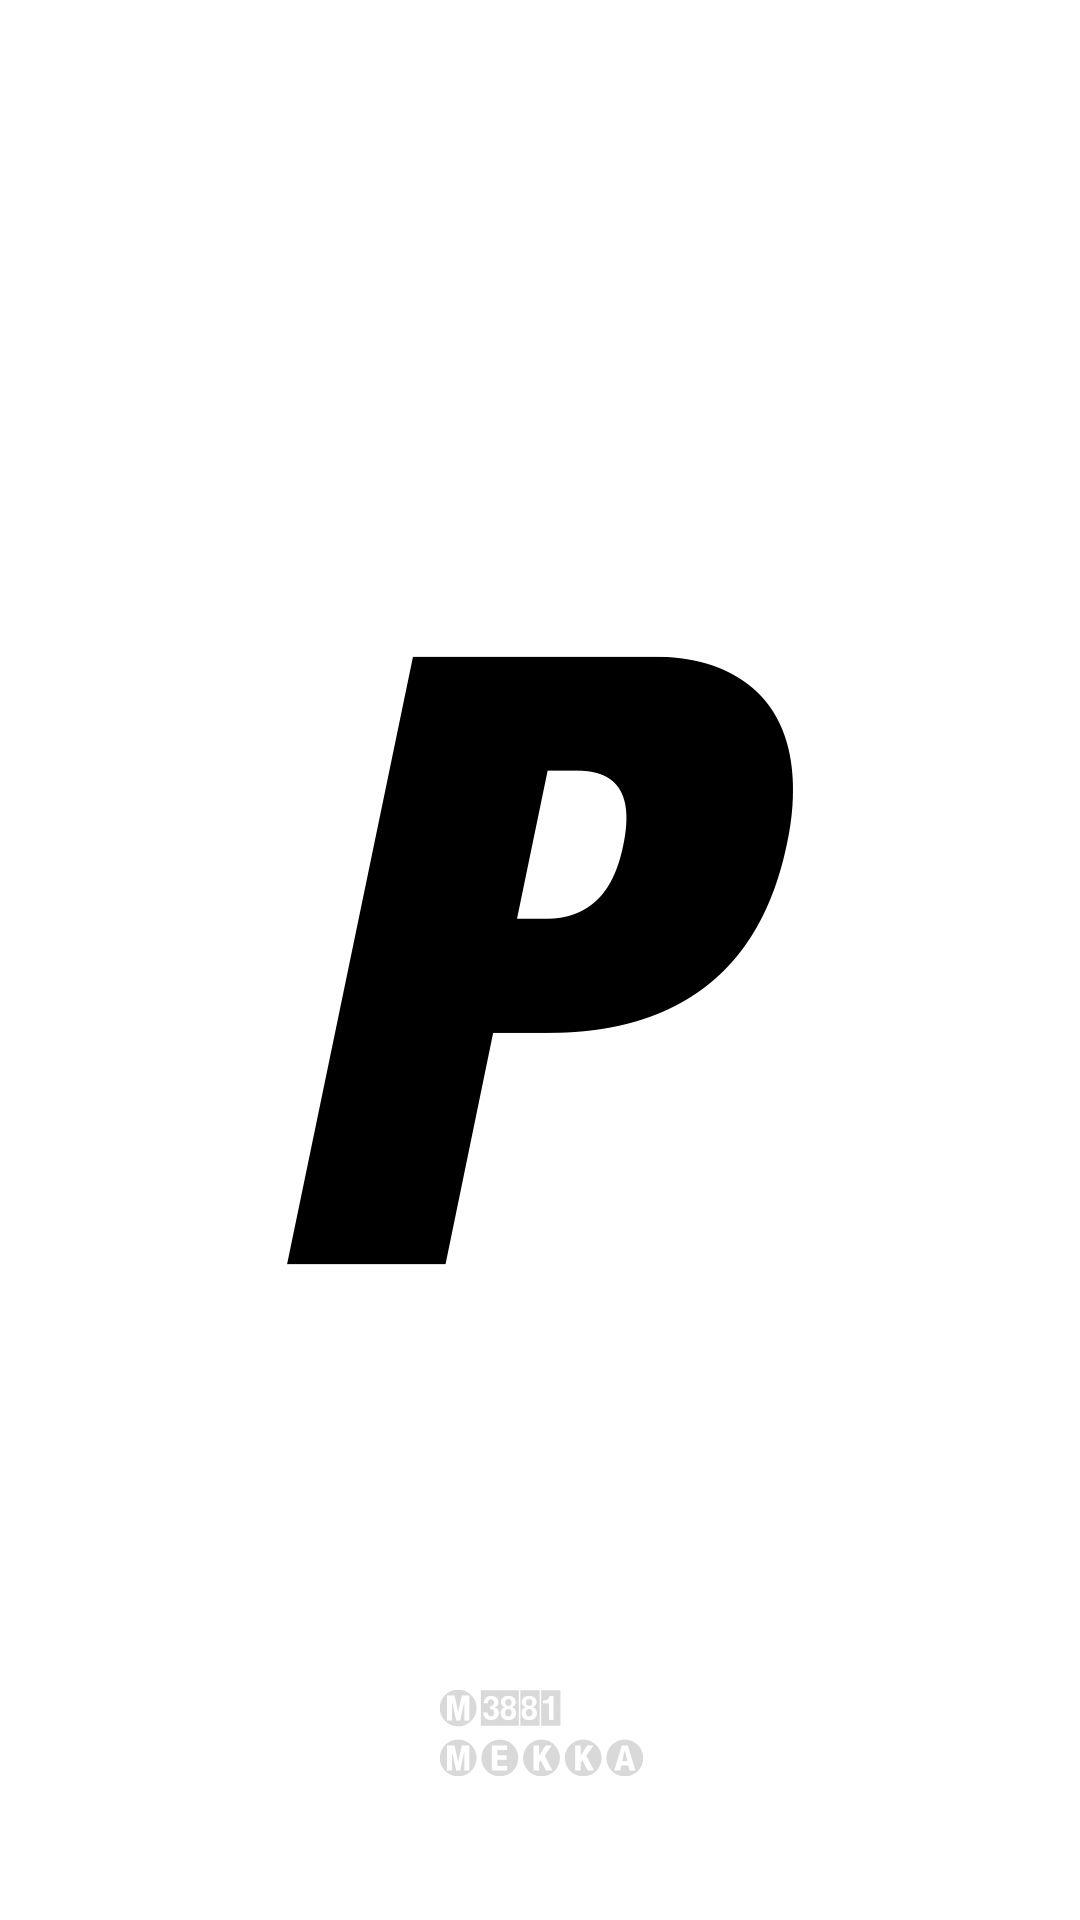 Palace Skateboards Logo - Palace Skateboards [M]